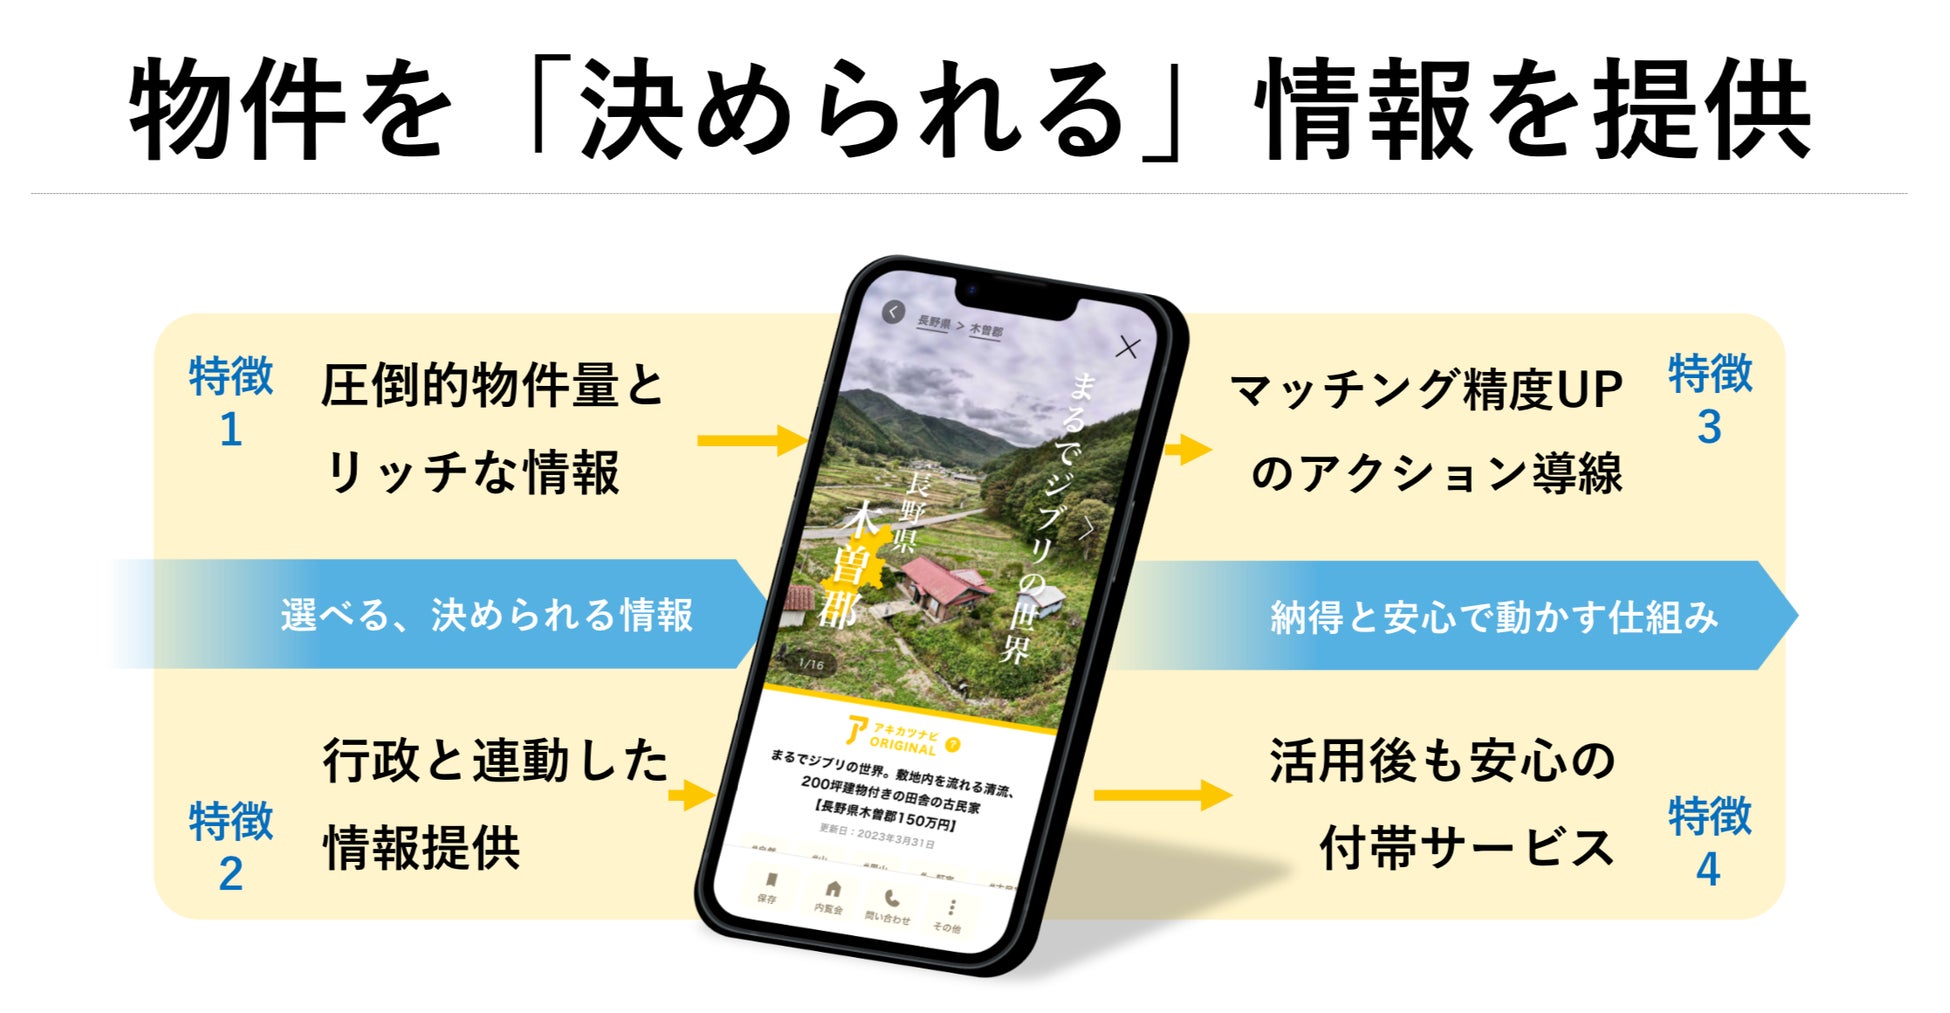 神戸市と空き家活用株式会社　空き家対策に関する連携協定を締結。相談窓口の「アキカツカウンター」と空き家情報流通サービスの「アキカツナビ」を神戸市にて事業展開へのサブ画像5